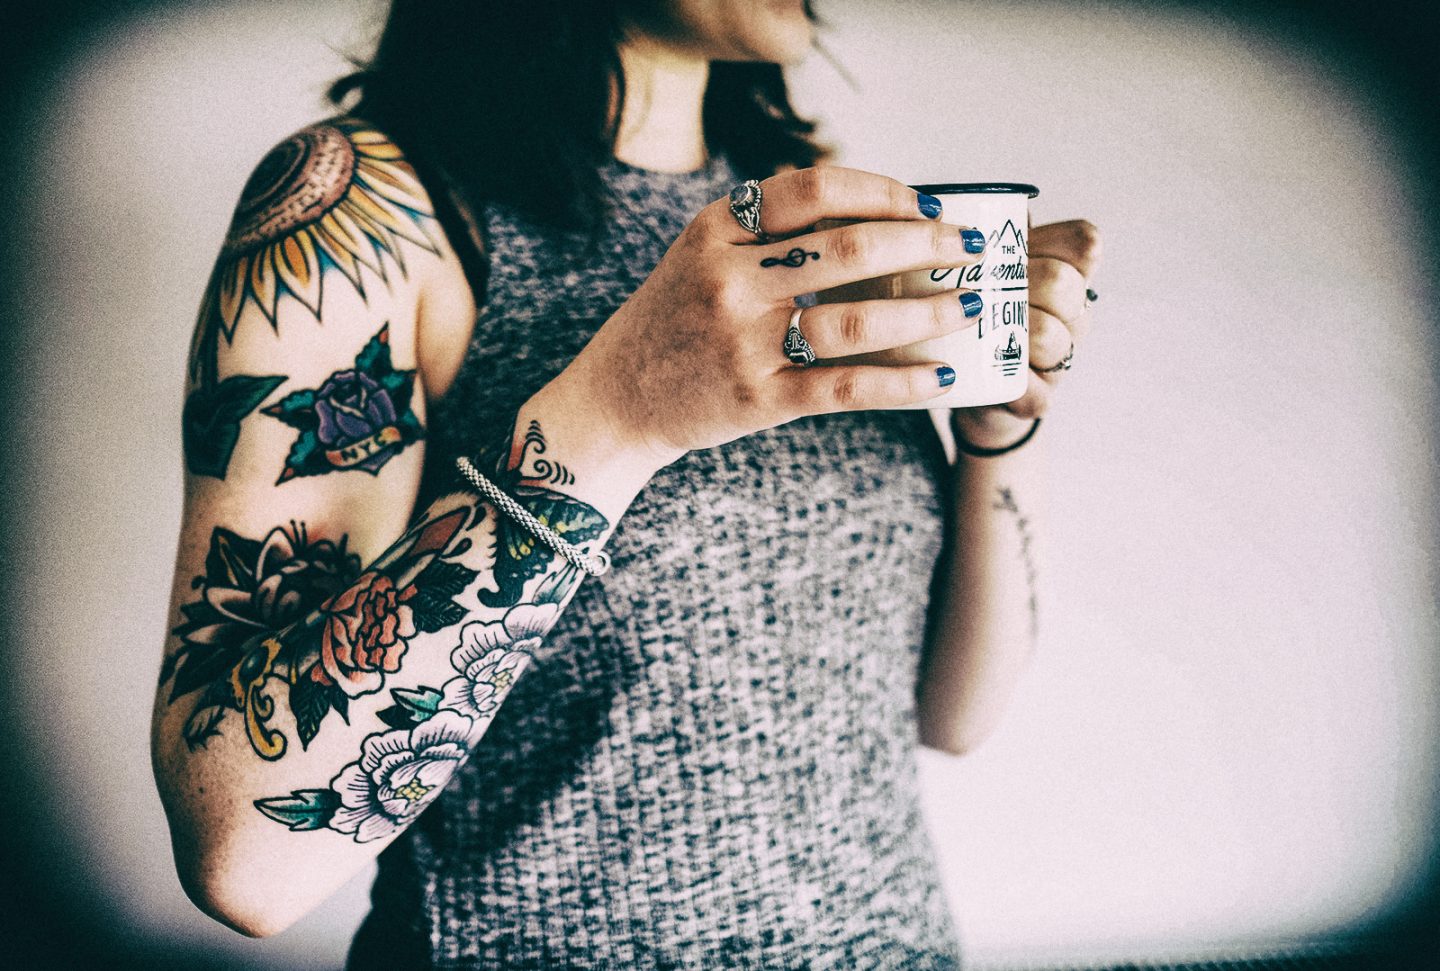 Progetto Tattoo: fare prevenzione attraverso Instagram